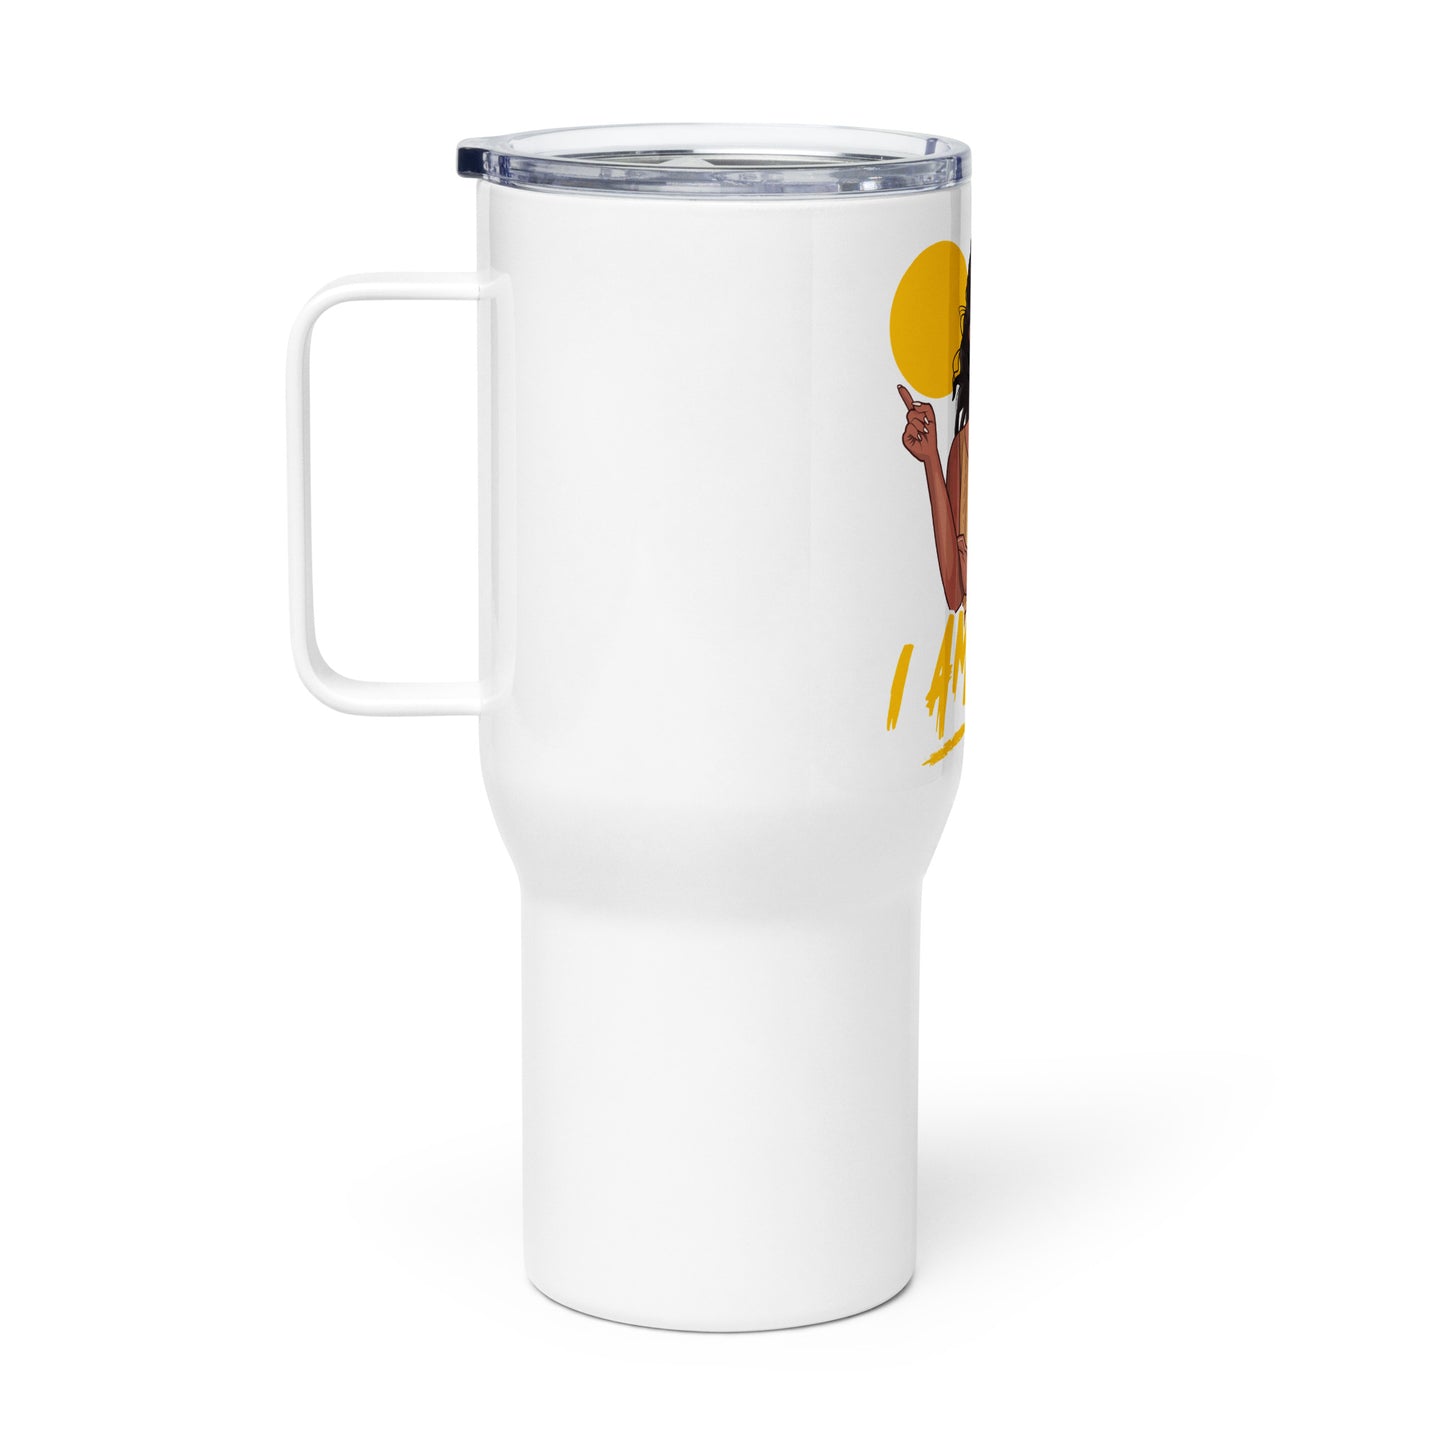 I Am Hot Travel mug with a handle